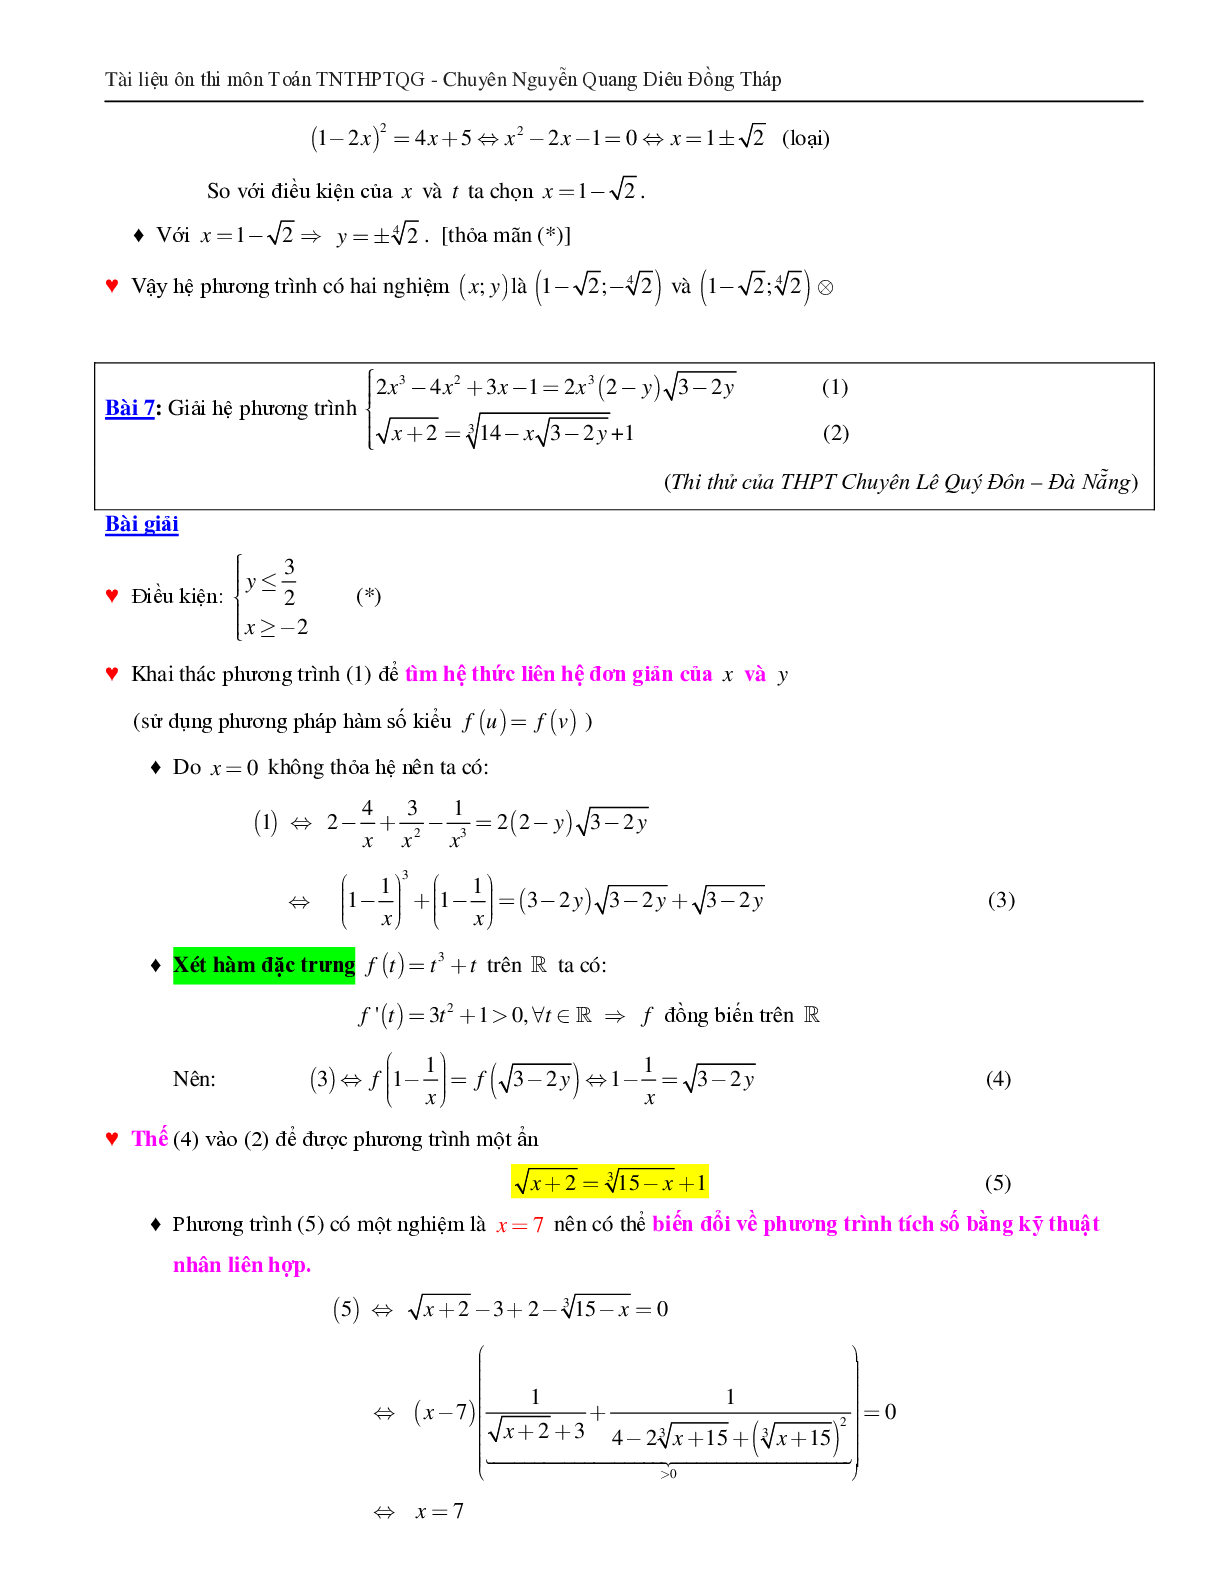 Giải hệ phương trình bằng phương pháp hàm số (trang 9)